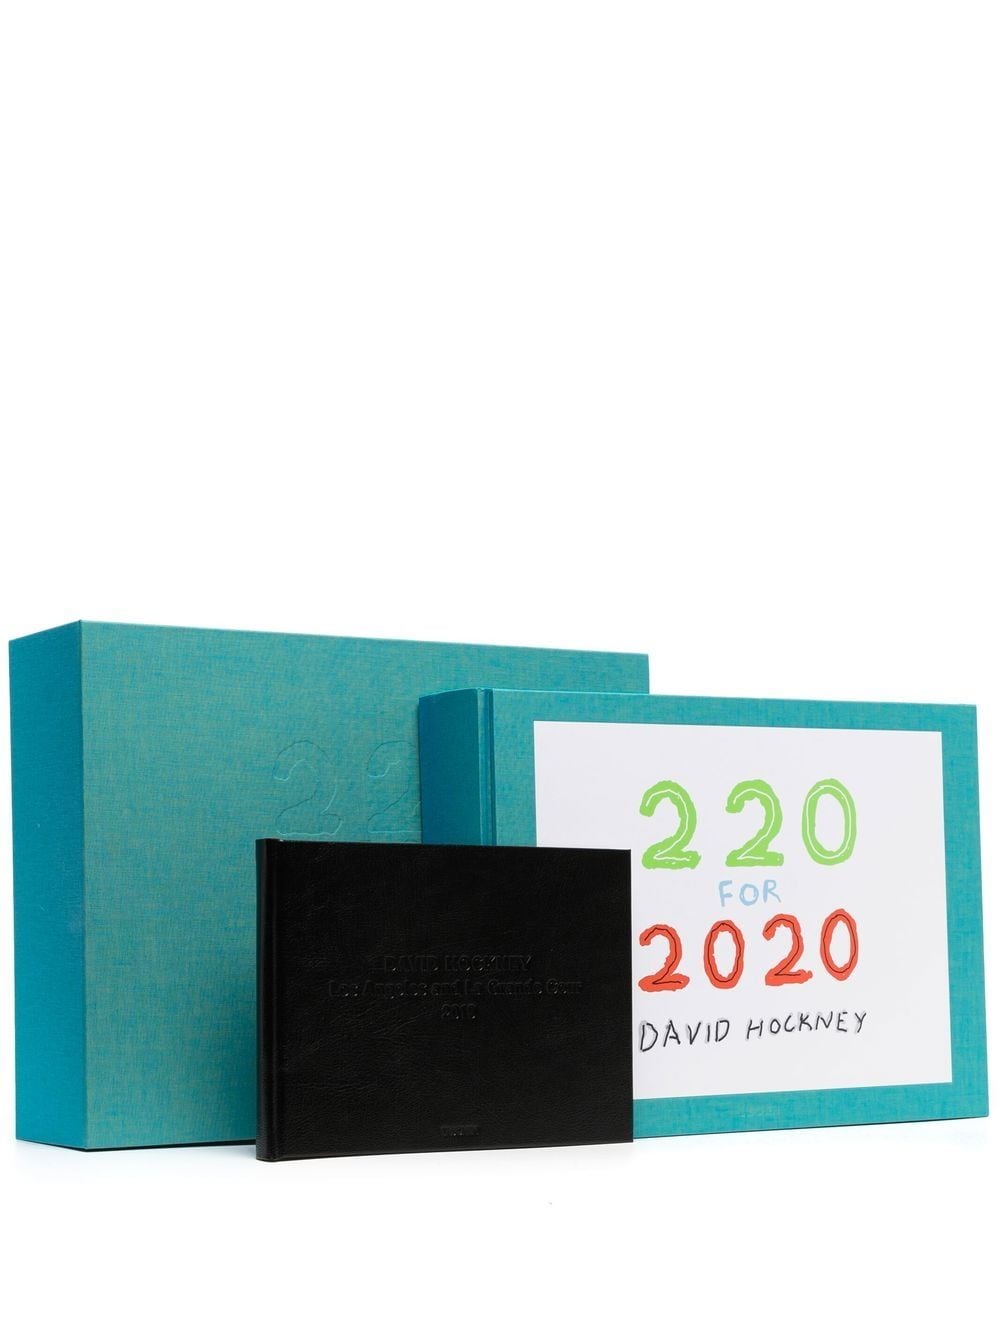 Shop Taschen 220 For 2020 By David Hockney